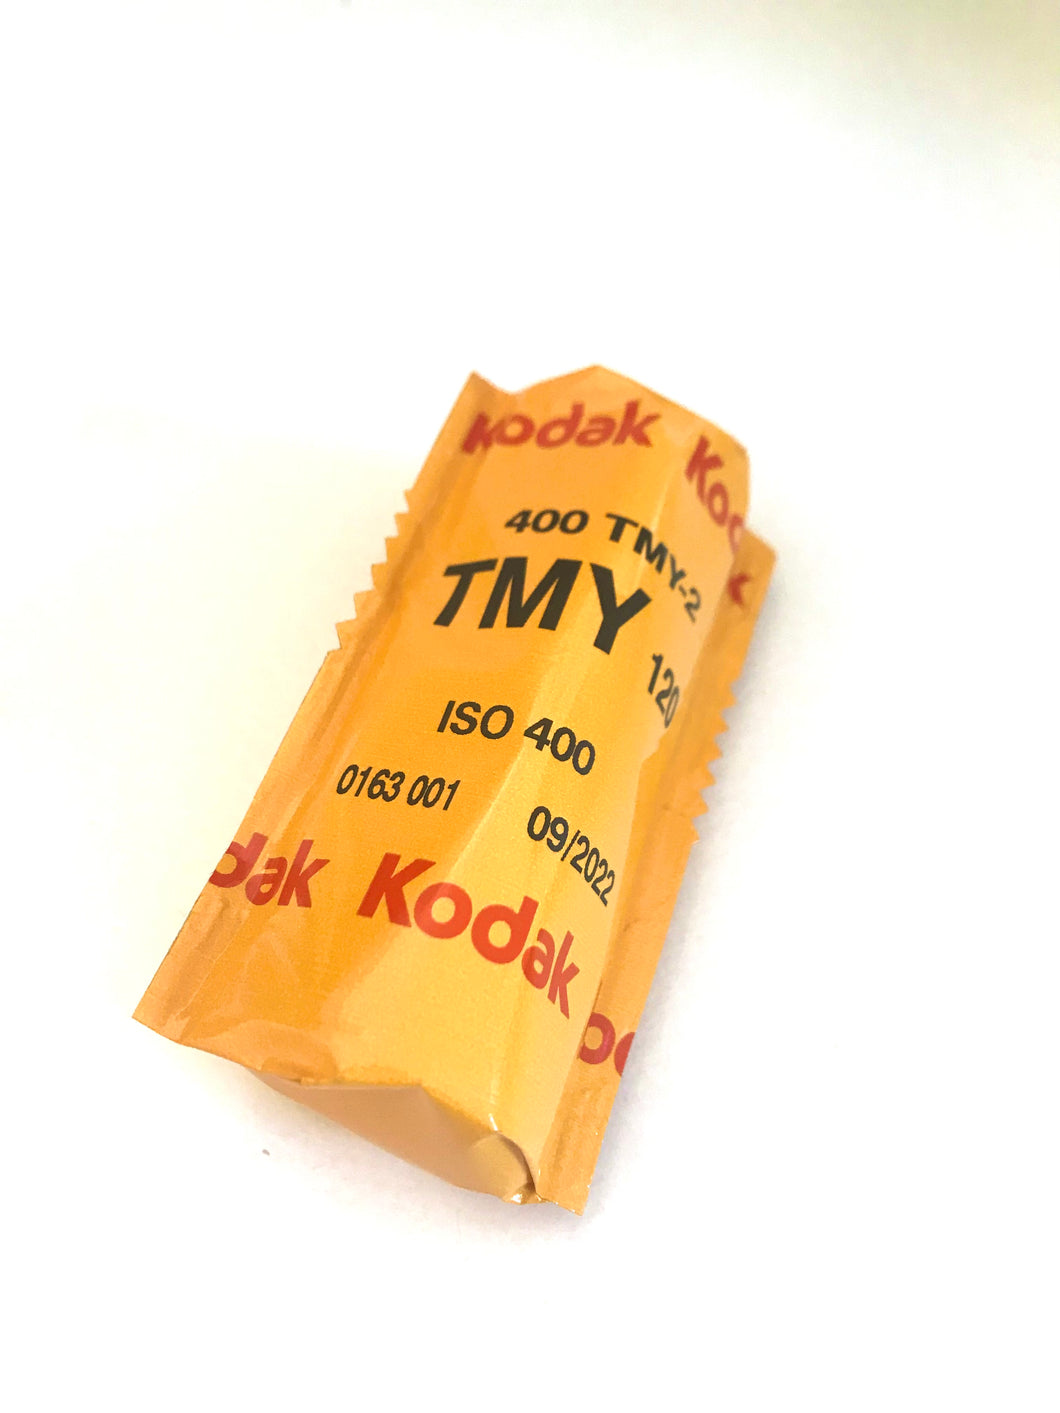 Kodak 400 120 B+W film